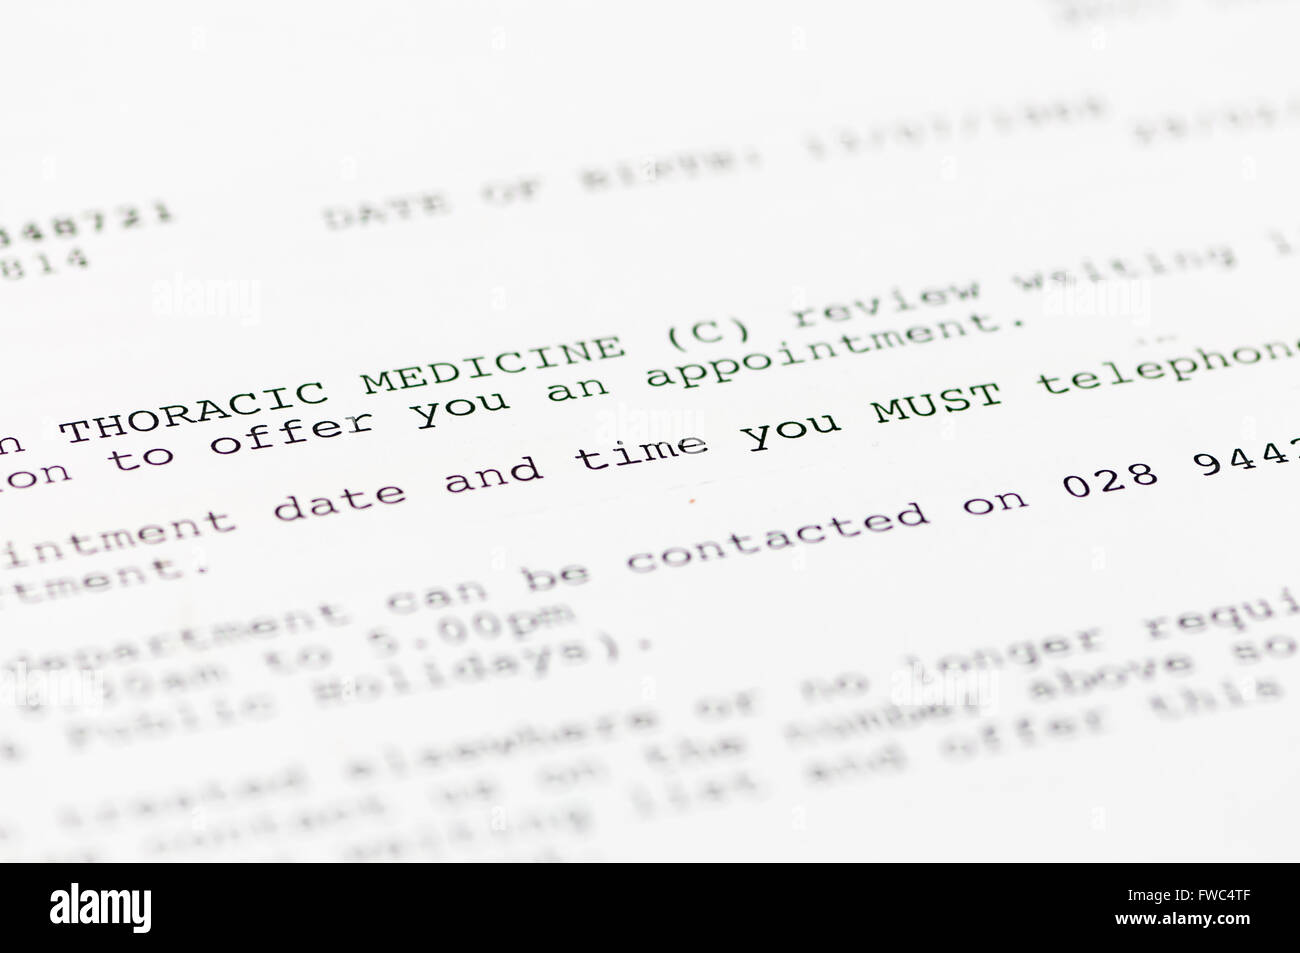 Carta de nombramiento del paciente informa de una cita con la clínica de medicina torácica. Foto de stock